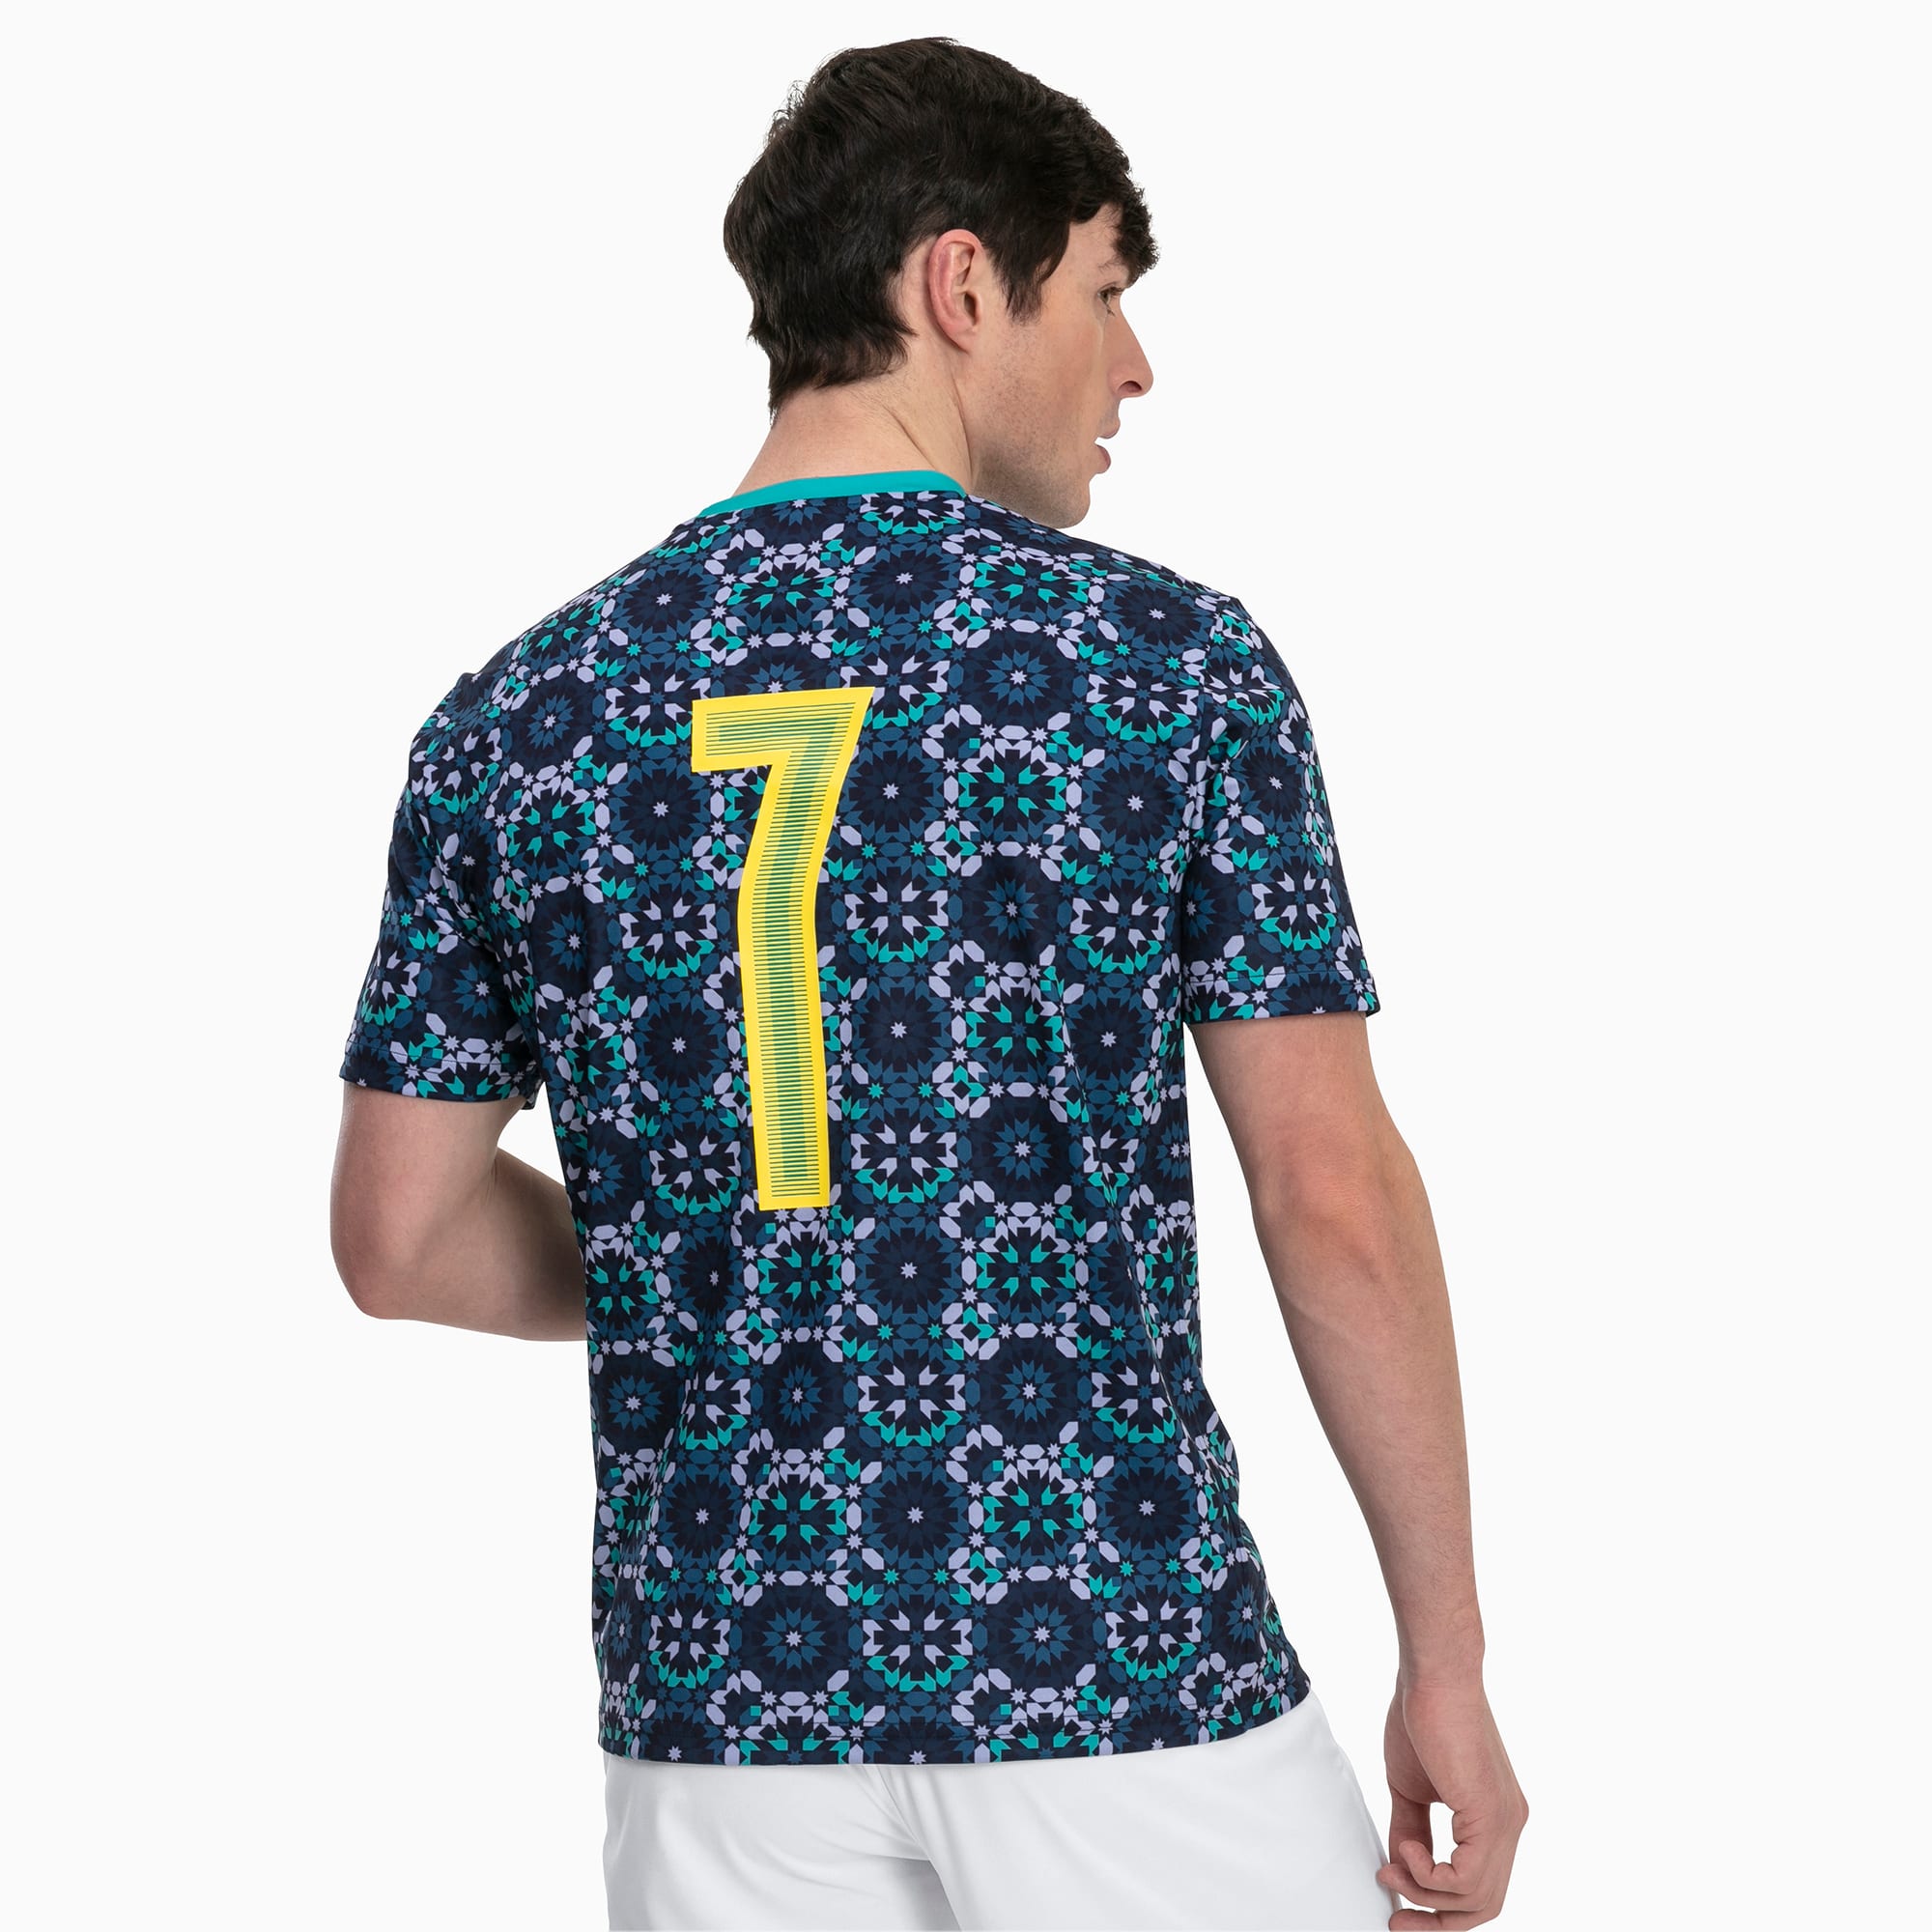 Puma Marrakesh City Influence Football Shirt - Peacoat | 19/20 Kits ...